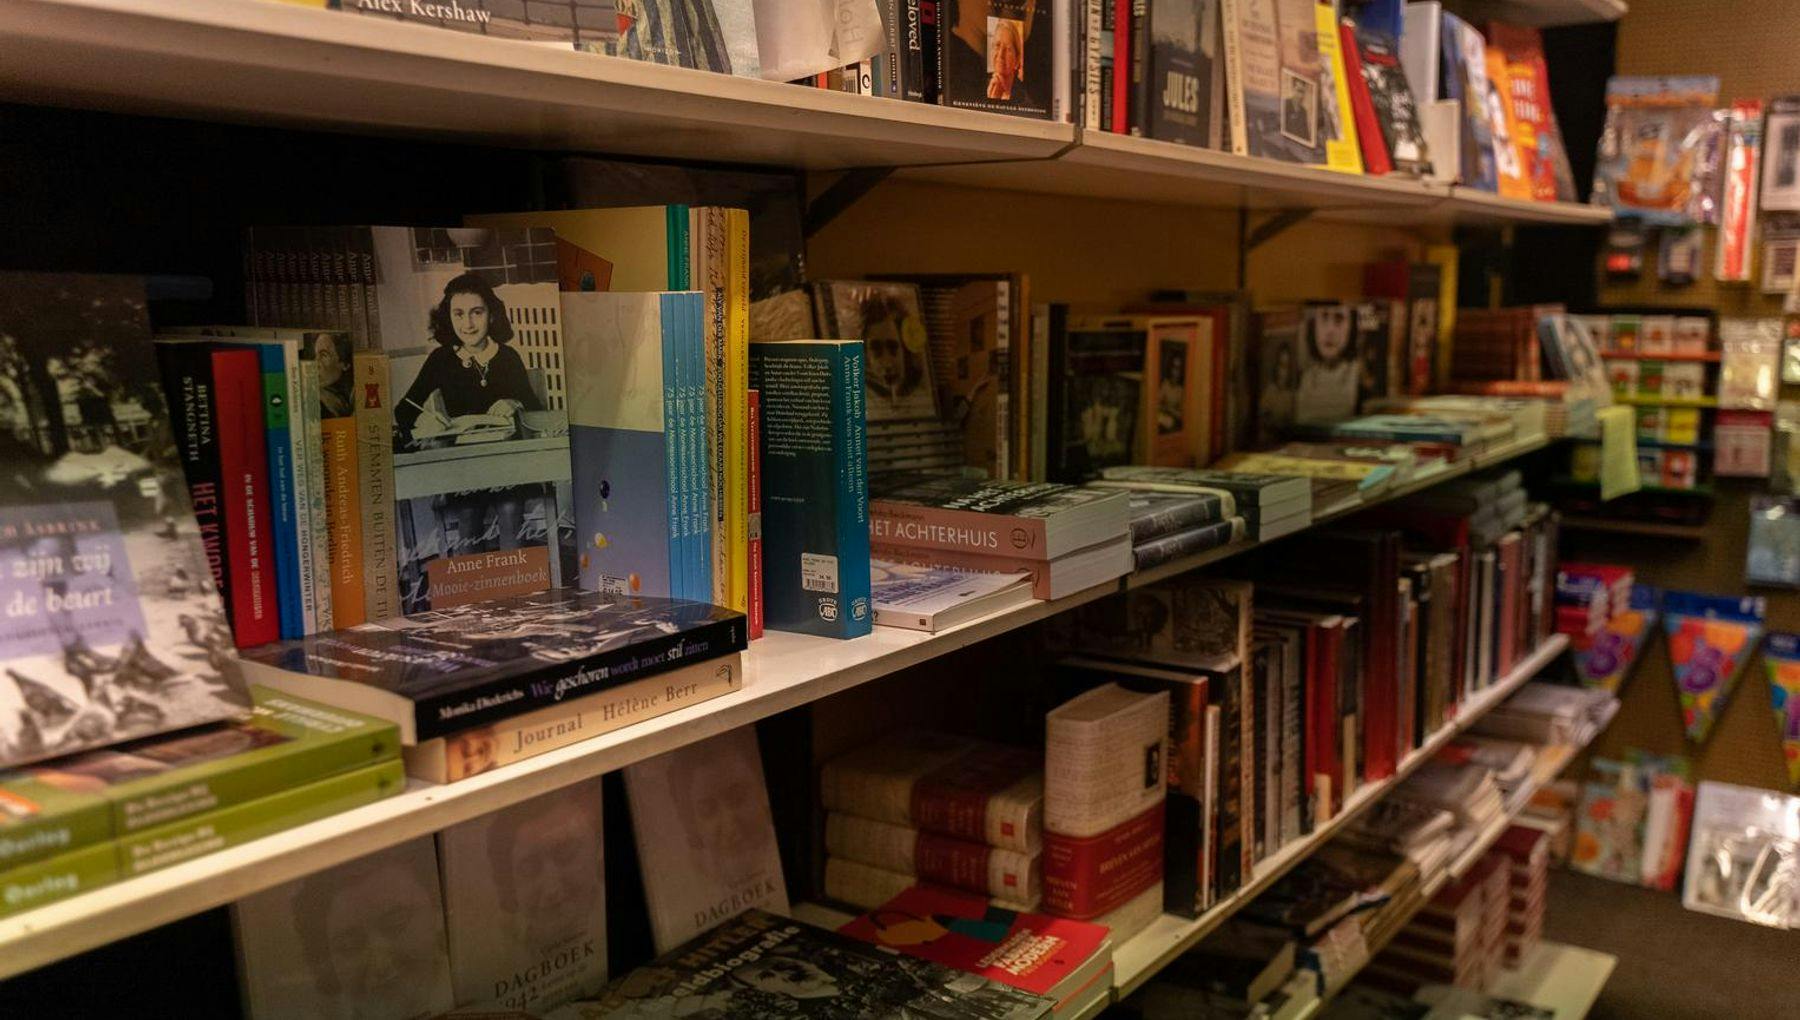 Boekhandel Jimmink, book store Rivierenbuurt, interior books about Second World War